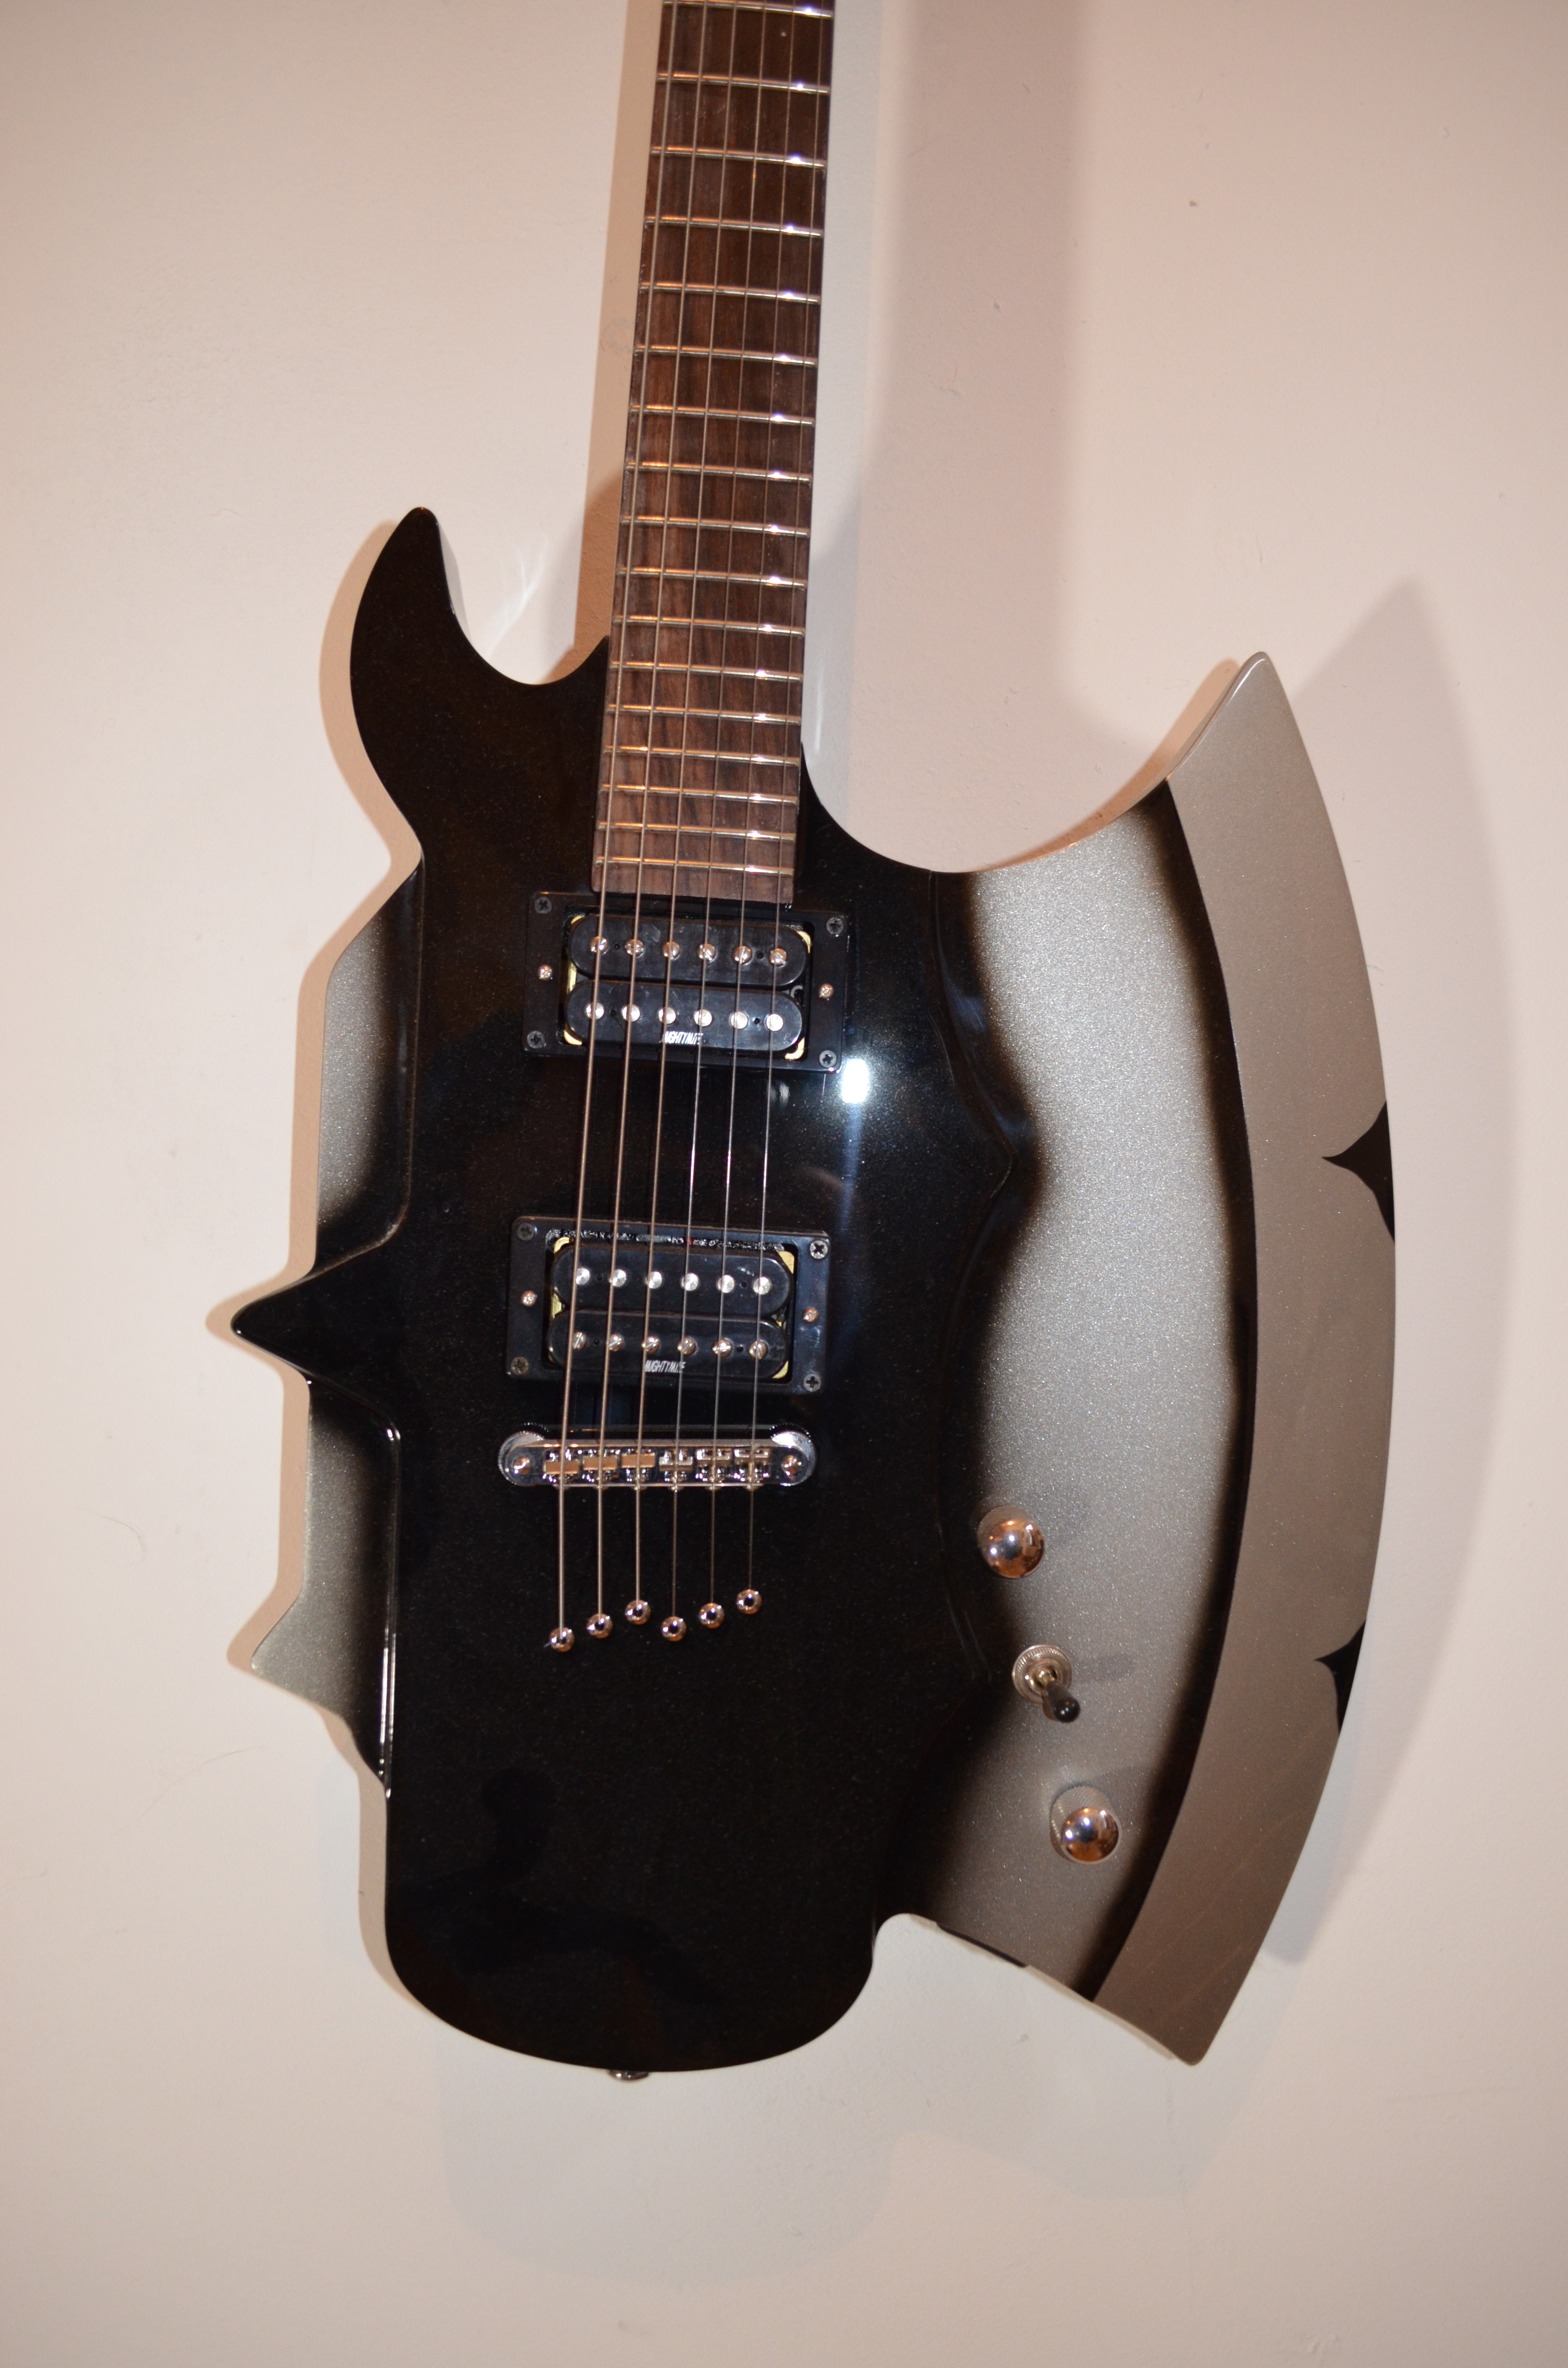 Photo Cort GS-Axe-2 : Cort Gene Simmons GS-AXE-2 Guitar (#784635